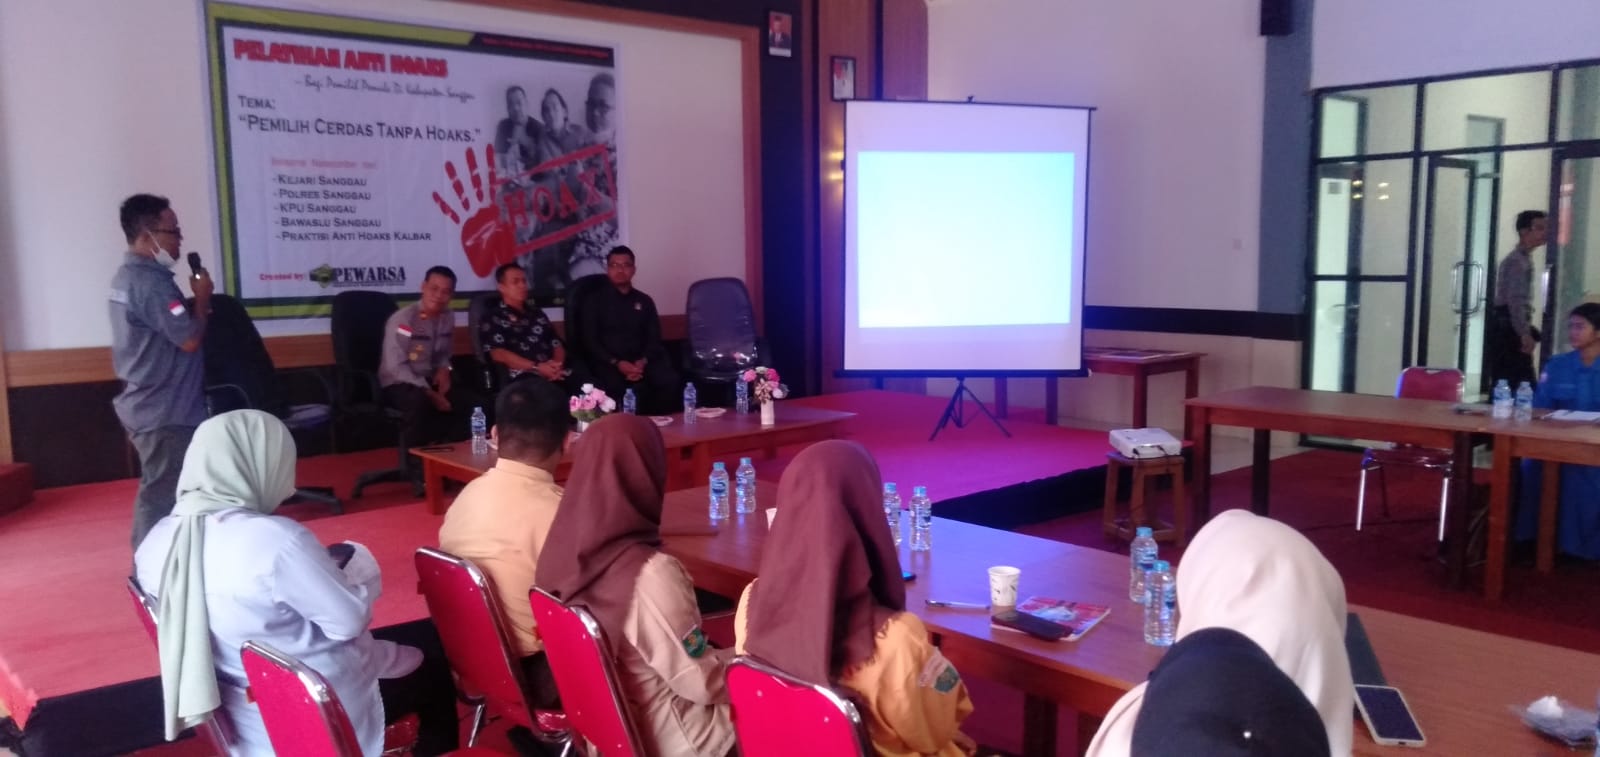 Foto---Ketua Persatuan Wartawan Sanggau (PEWARSA), Abang Indra memberi sambutan pad acara Pelatihan Anti Hoaks di aula Perpustakaan Daerah Sanggau, Kamis (15/12/2022)---Kiram Akbar